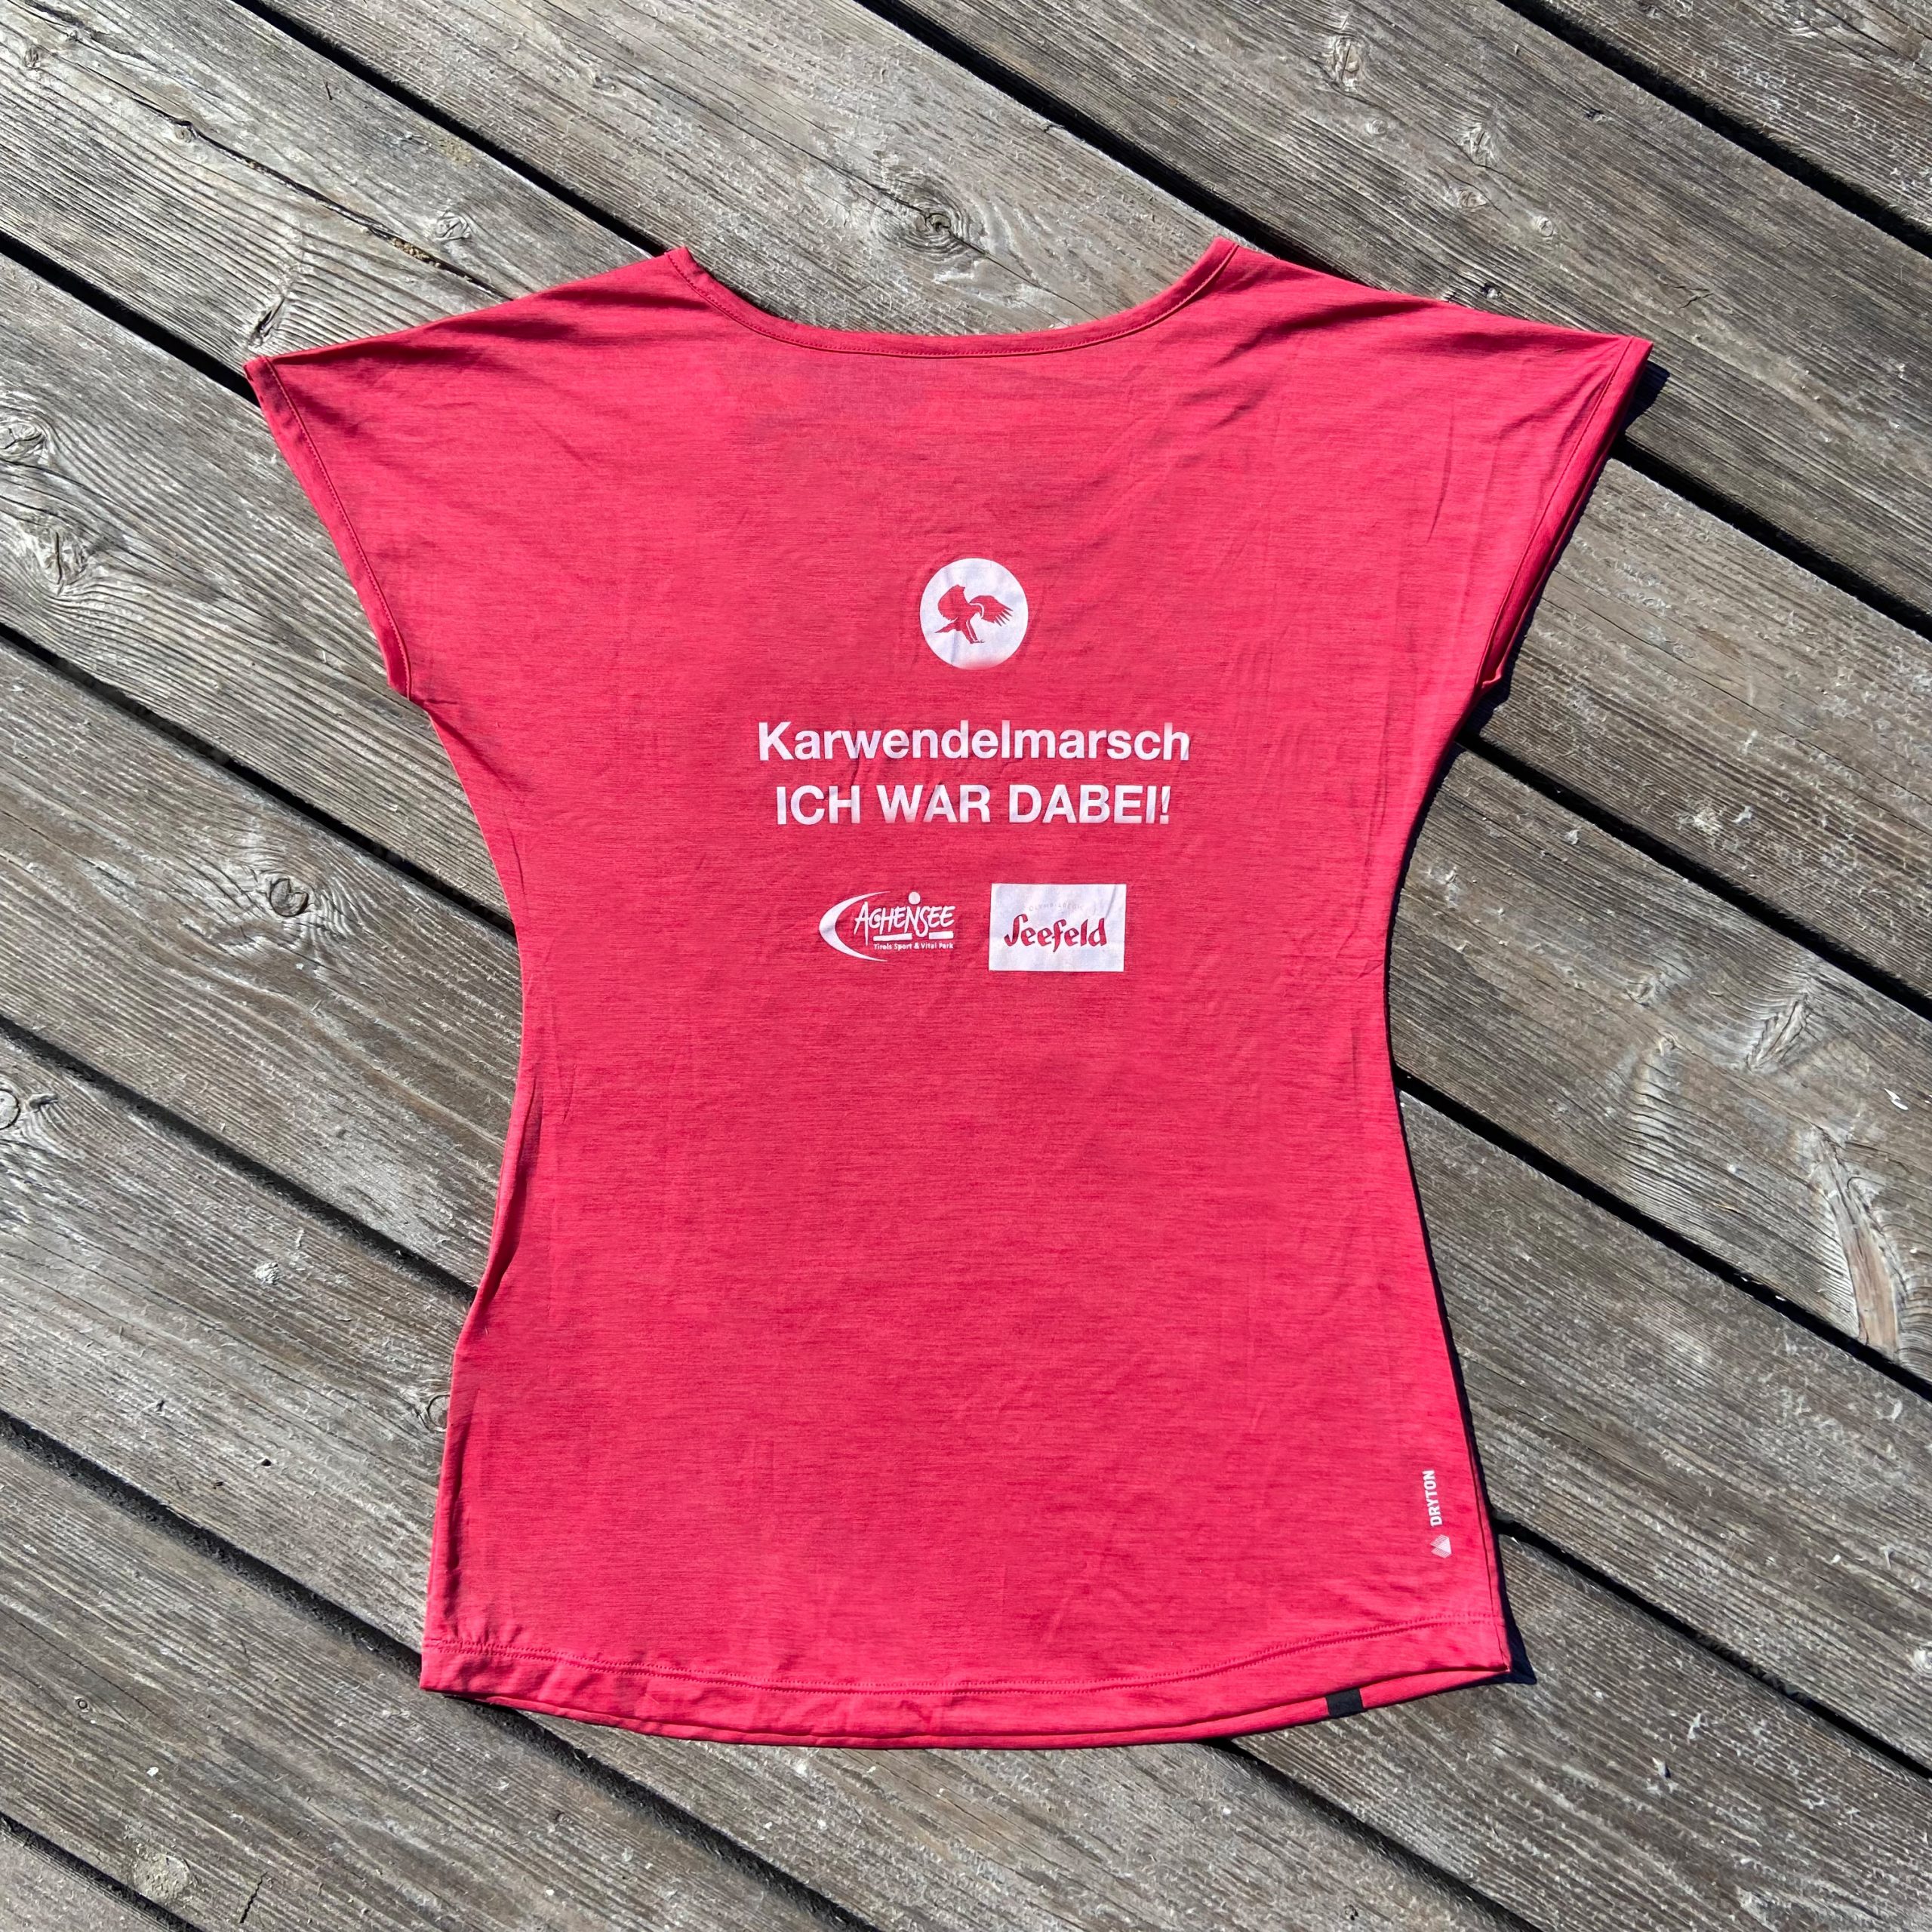 Salewa – „Ich war dabei“ Karwendelmarsch T-Shirt (Damen) 2022